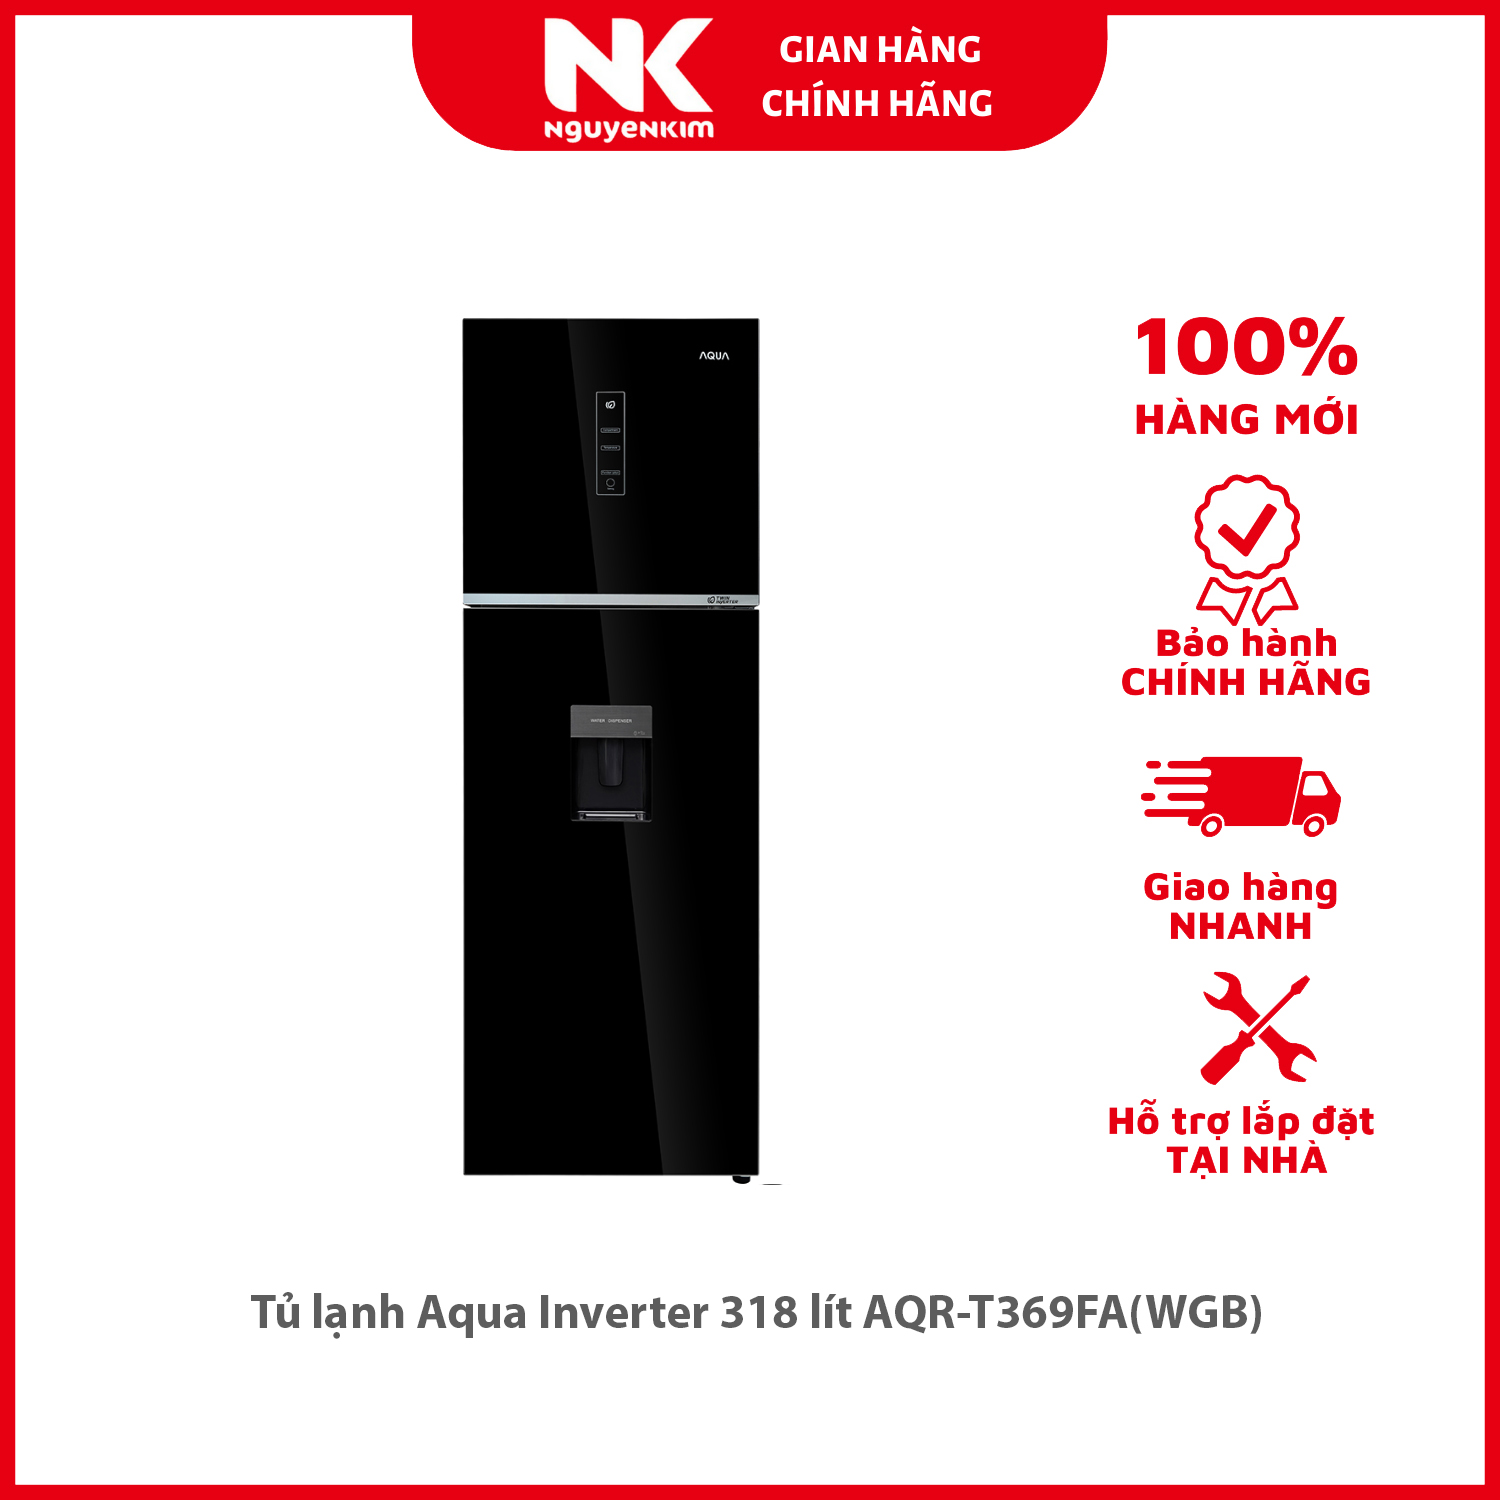 Tủ lạnh Aqua Inverter 318 lít AQR-T369FA(WGB) - Hàng chính hãng [Giao hàng toàn quốc]